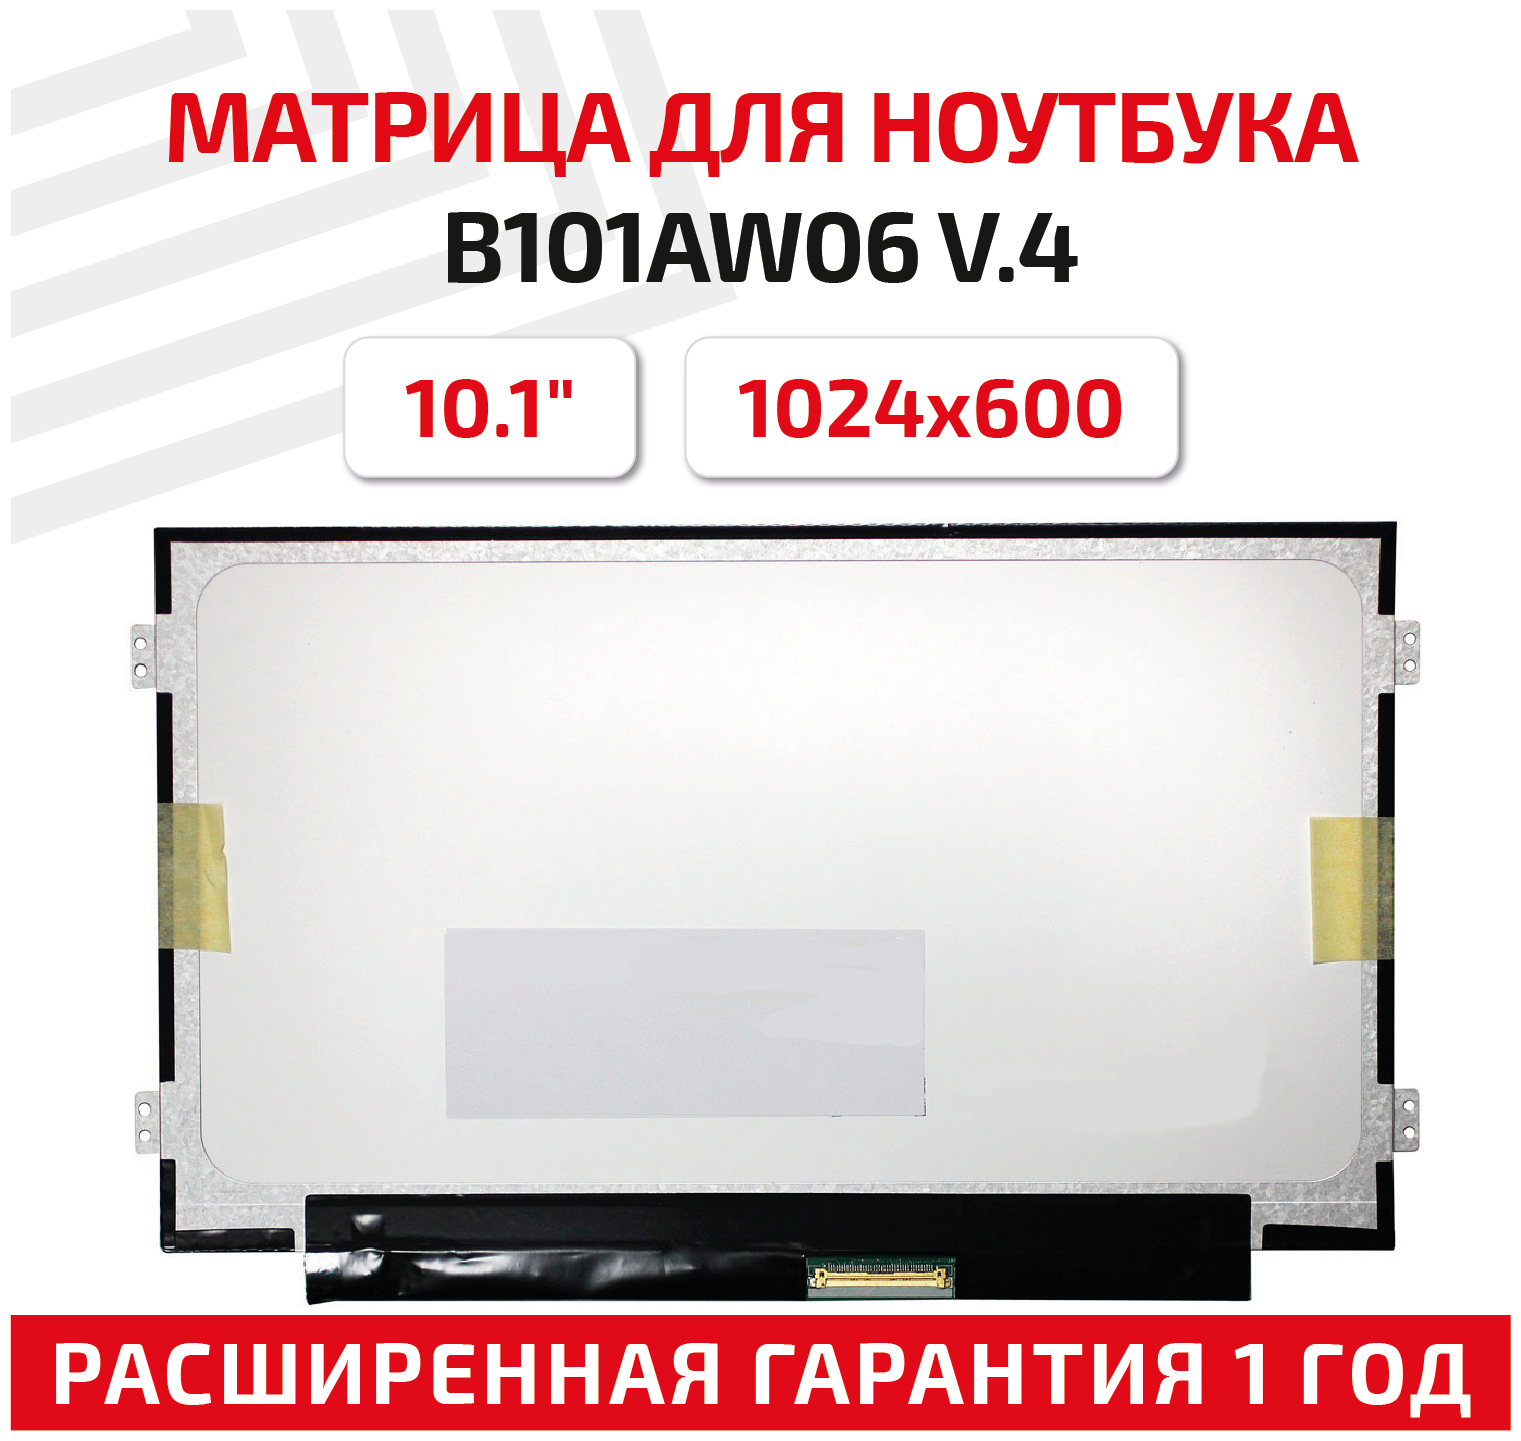 Матрица (экран) для ноутбука B101AW06 V.4, 10.1", 1024x600, Slim (тонкая), 40-pin, светодиодная (LED), матовая